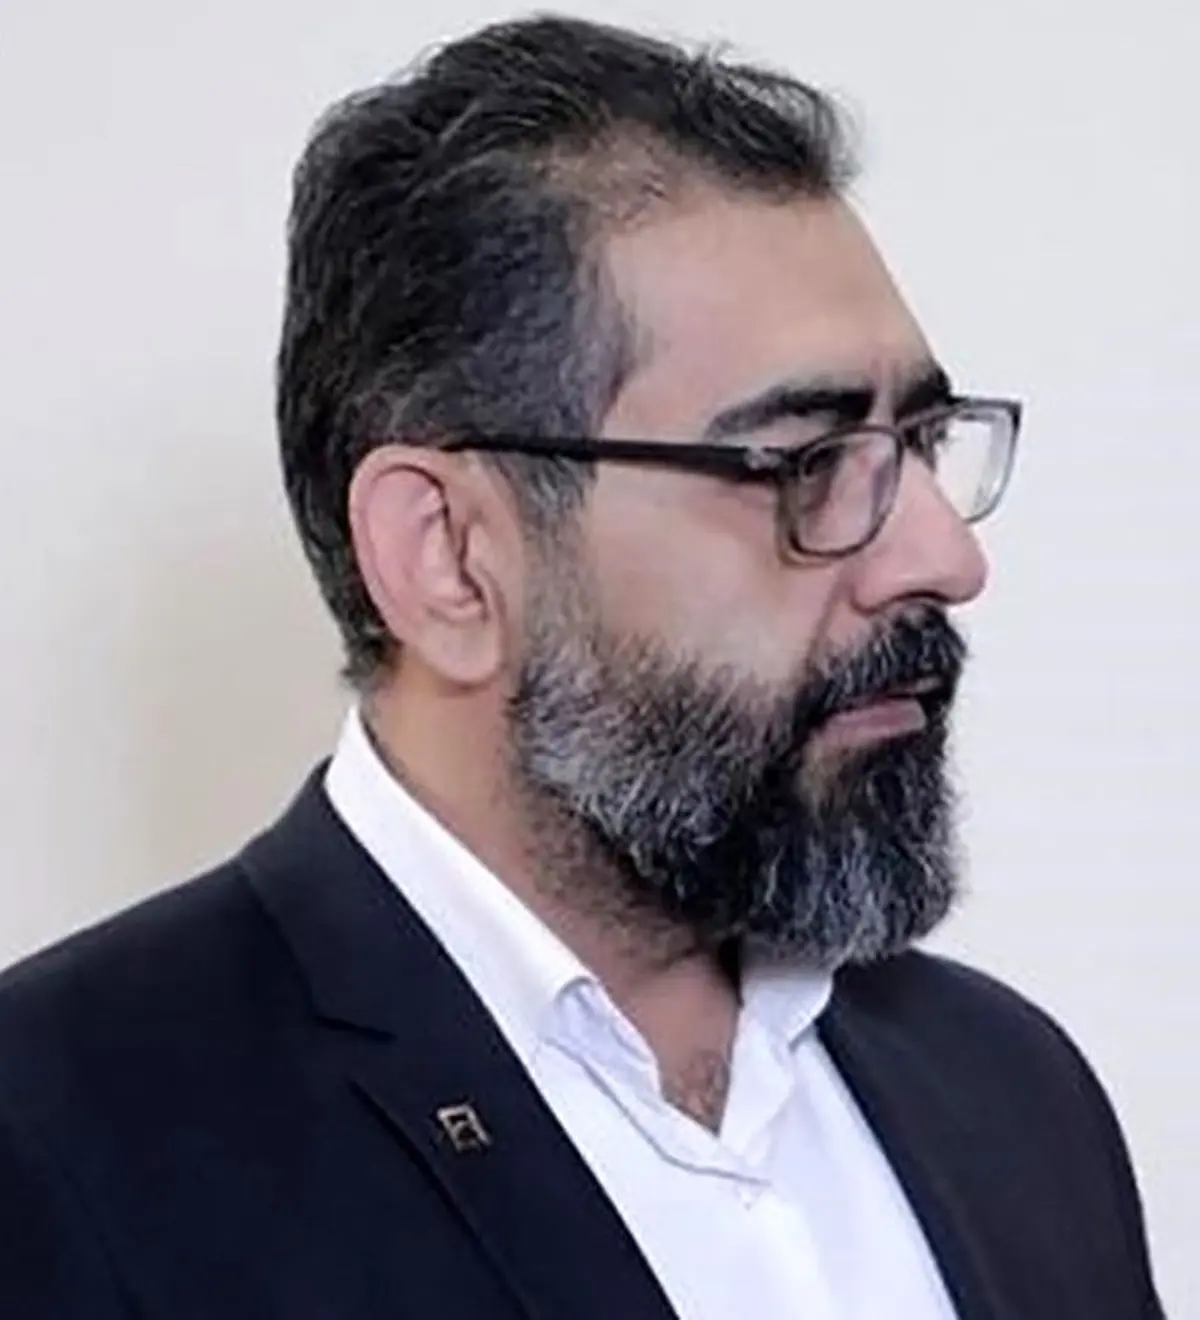 دیپورت رئیس بانک معروف به ایران | بالاخره دستگیر شد | اختلاسگر معروف به کشور استرداد شد | با خانواده فرار کرده بود